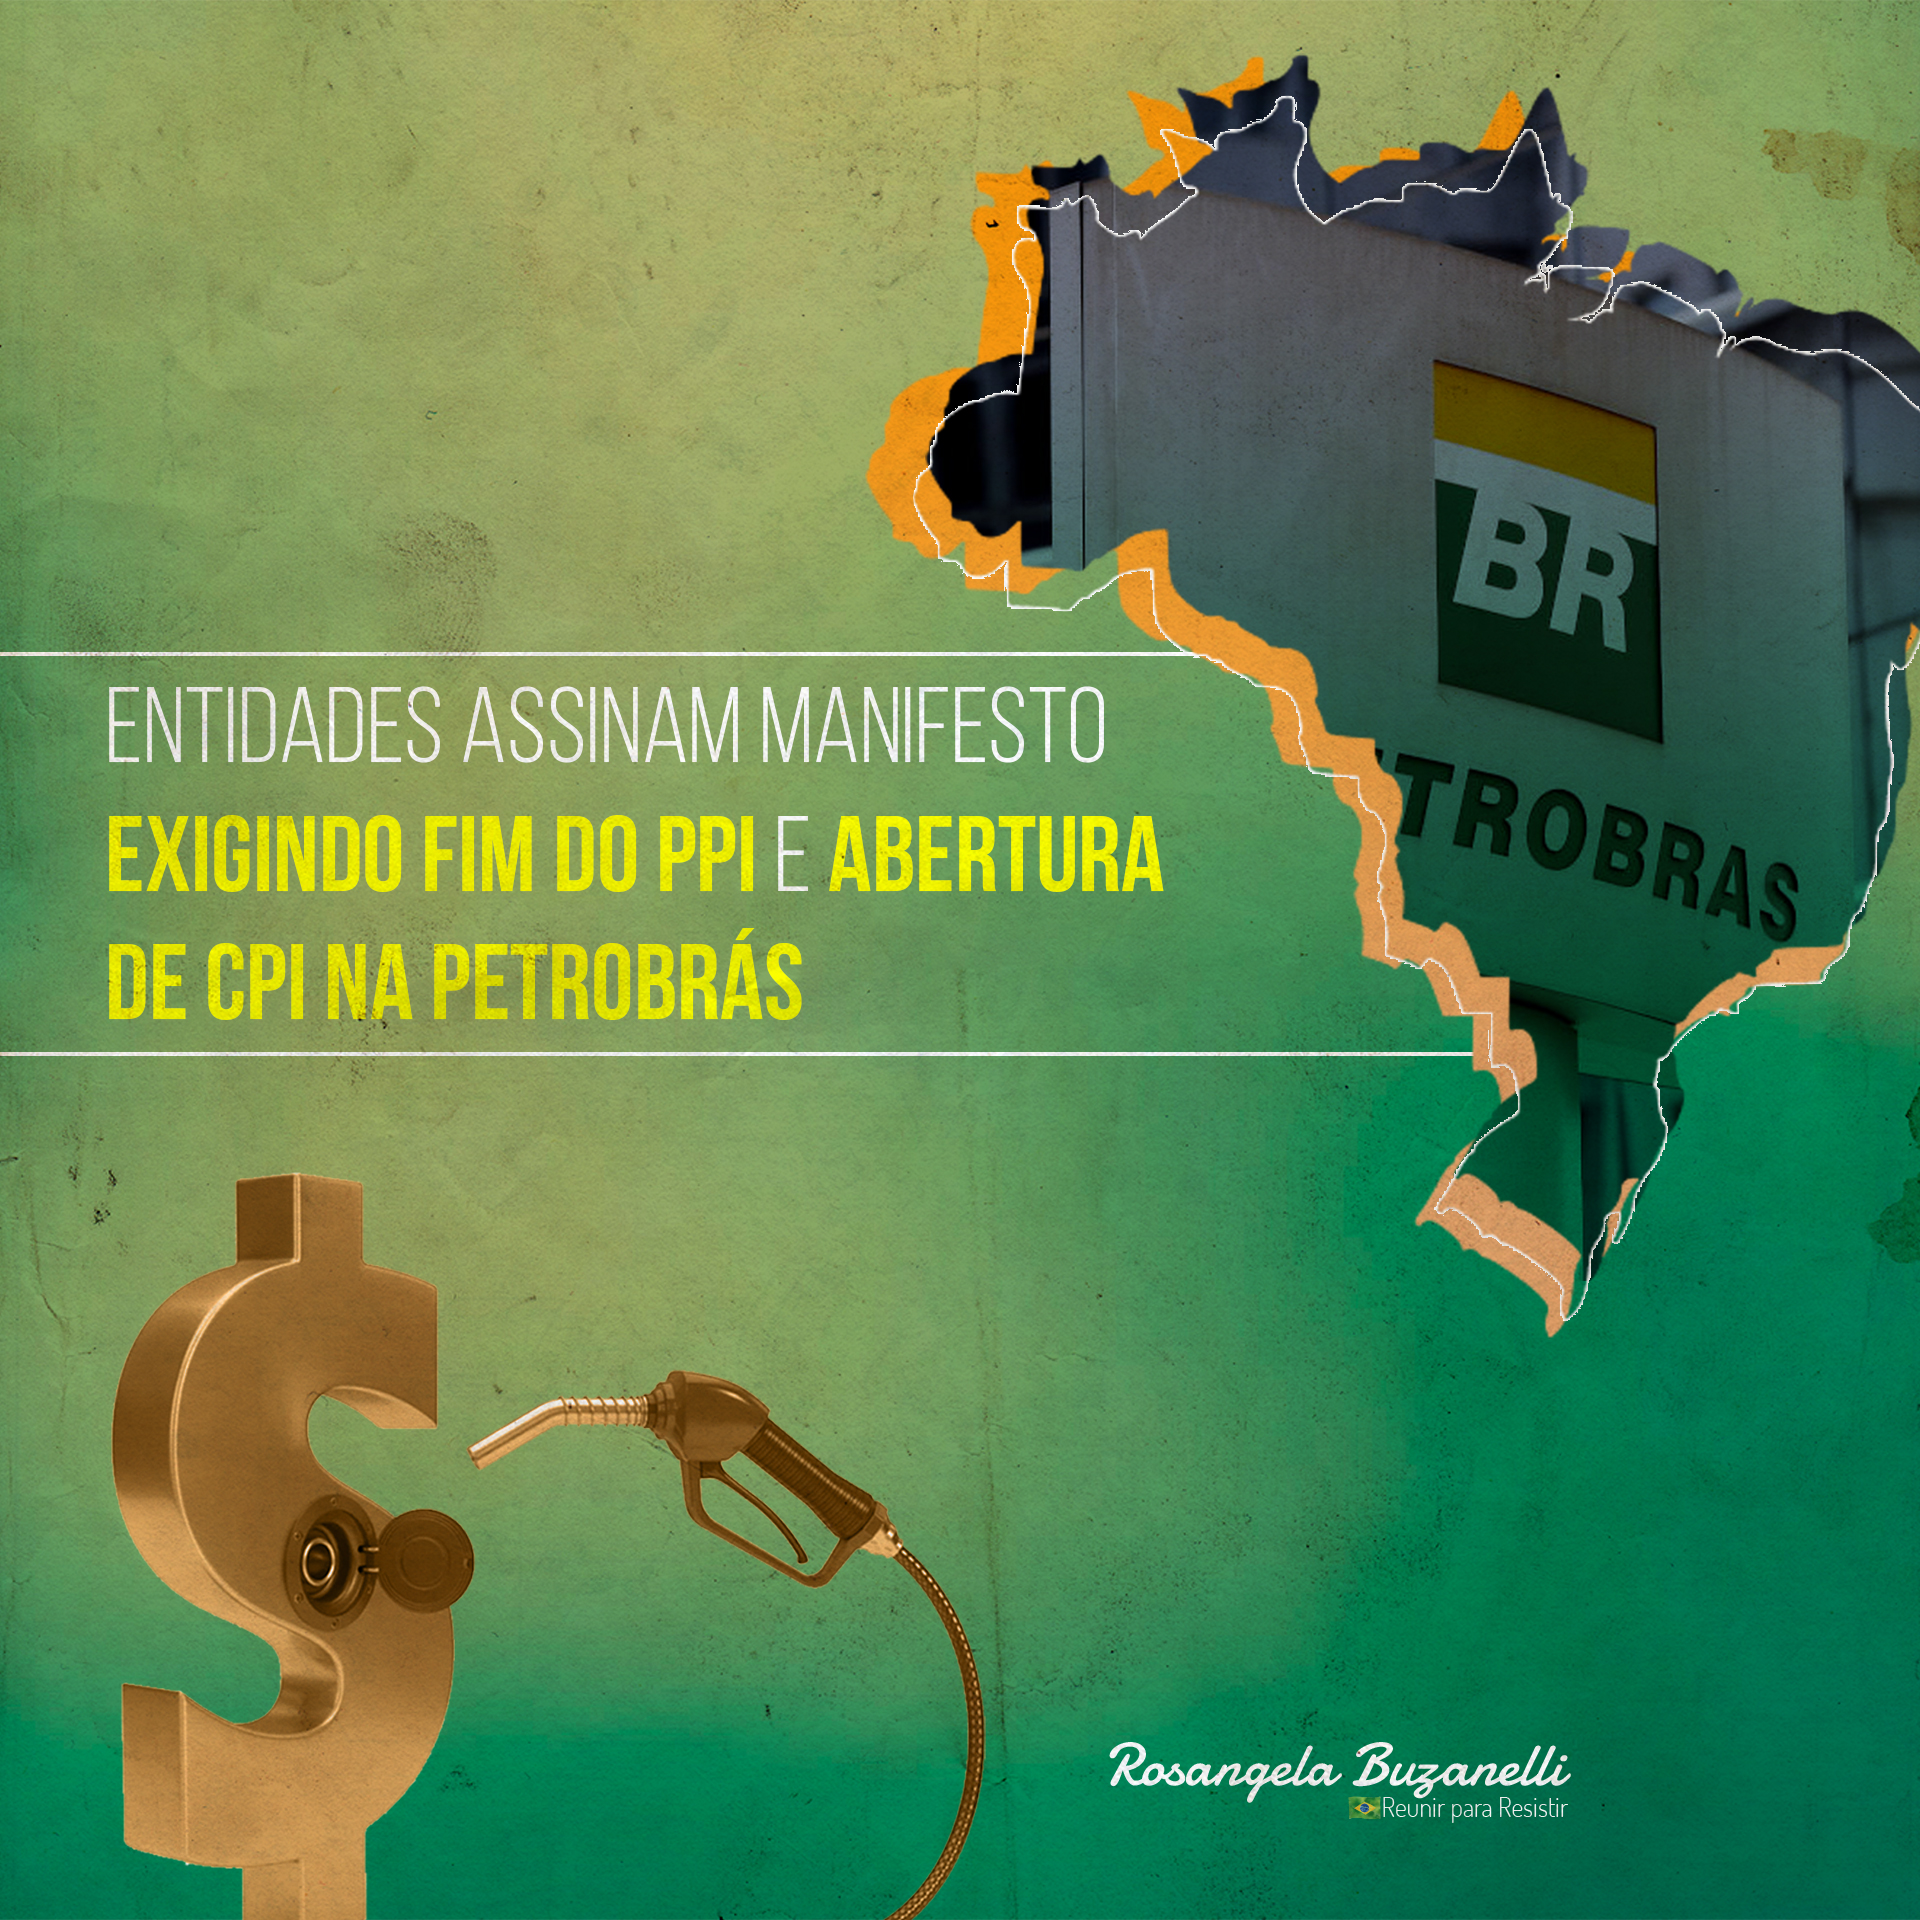 Aepet se une a três entidades em manifesto contra o PPI, a política de preços da Petrobrás